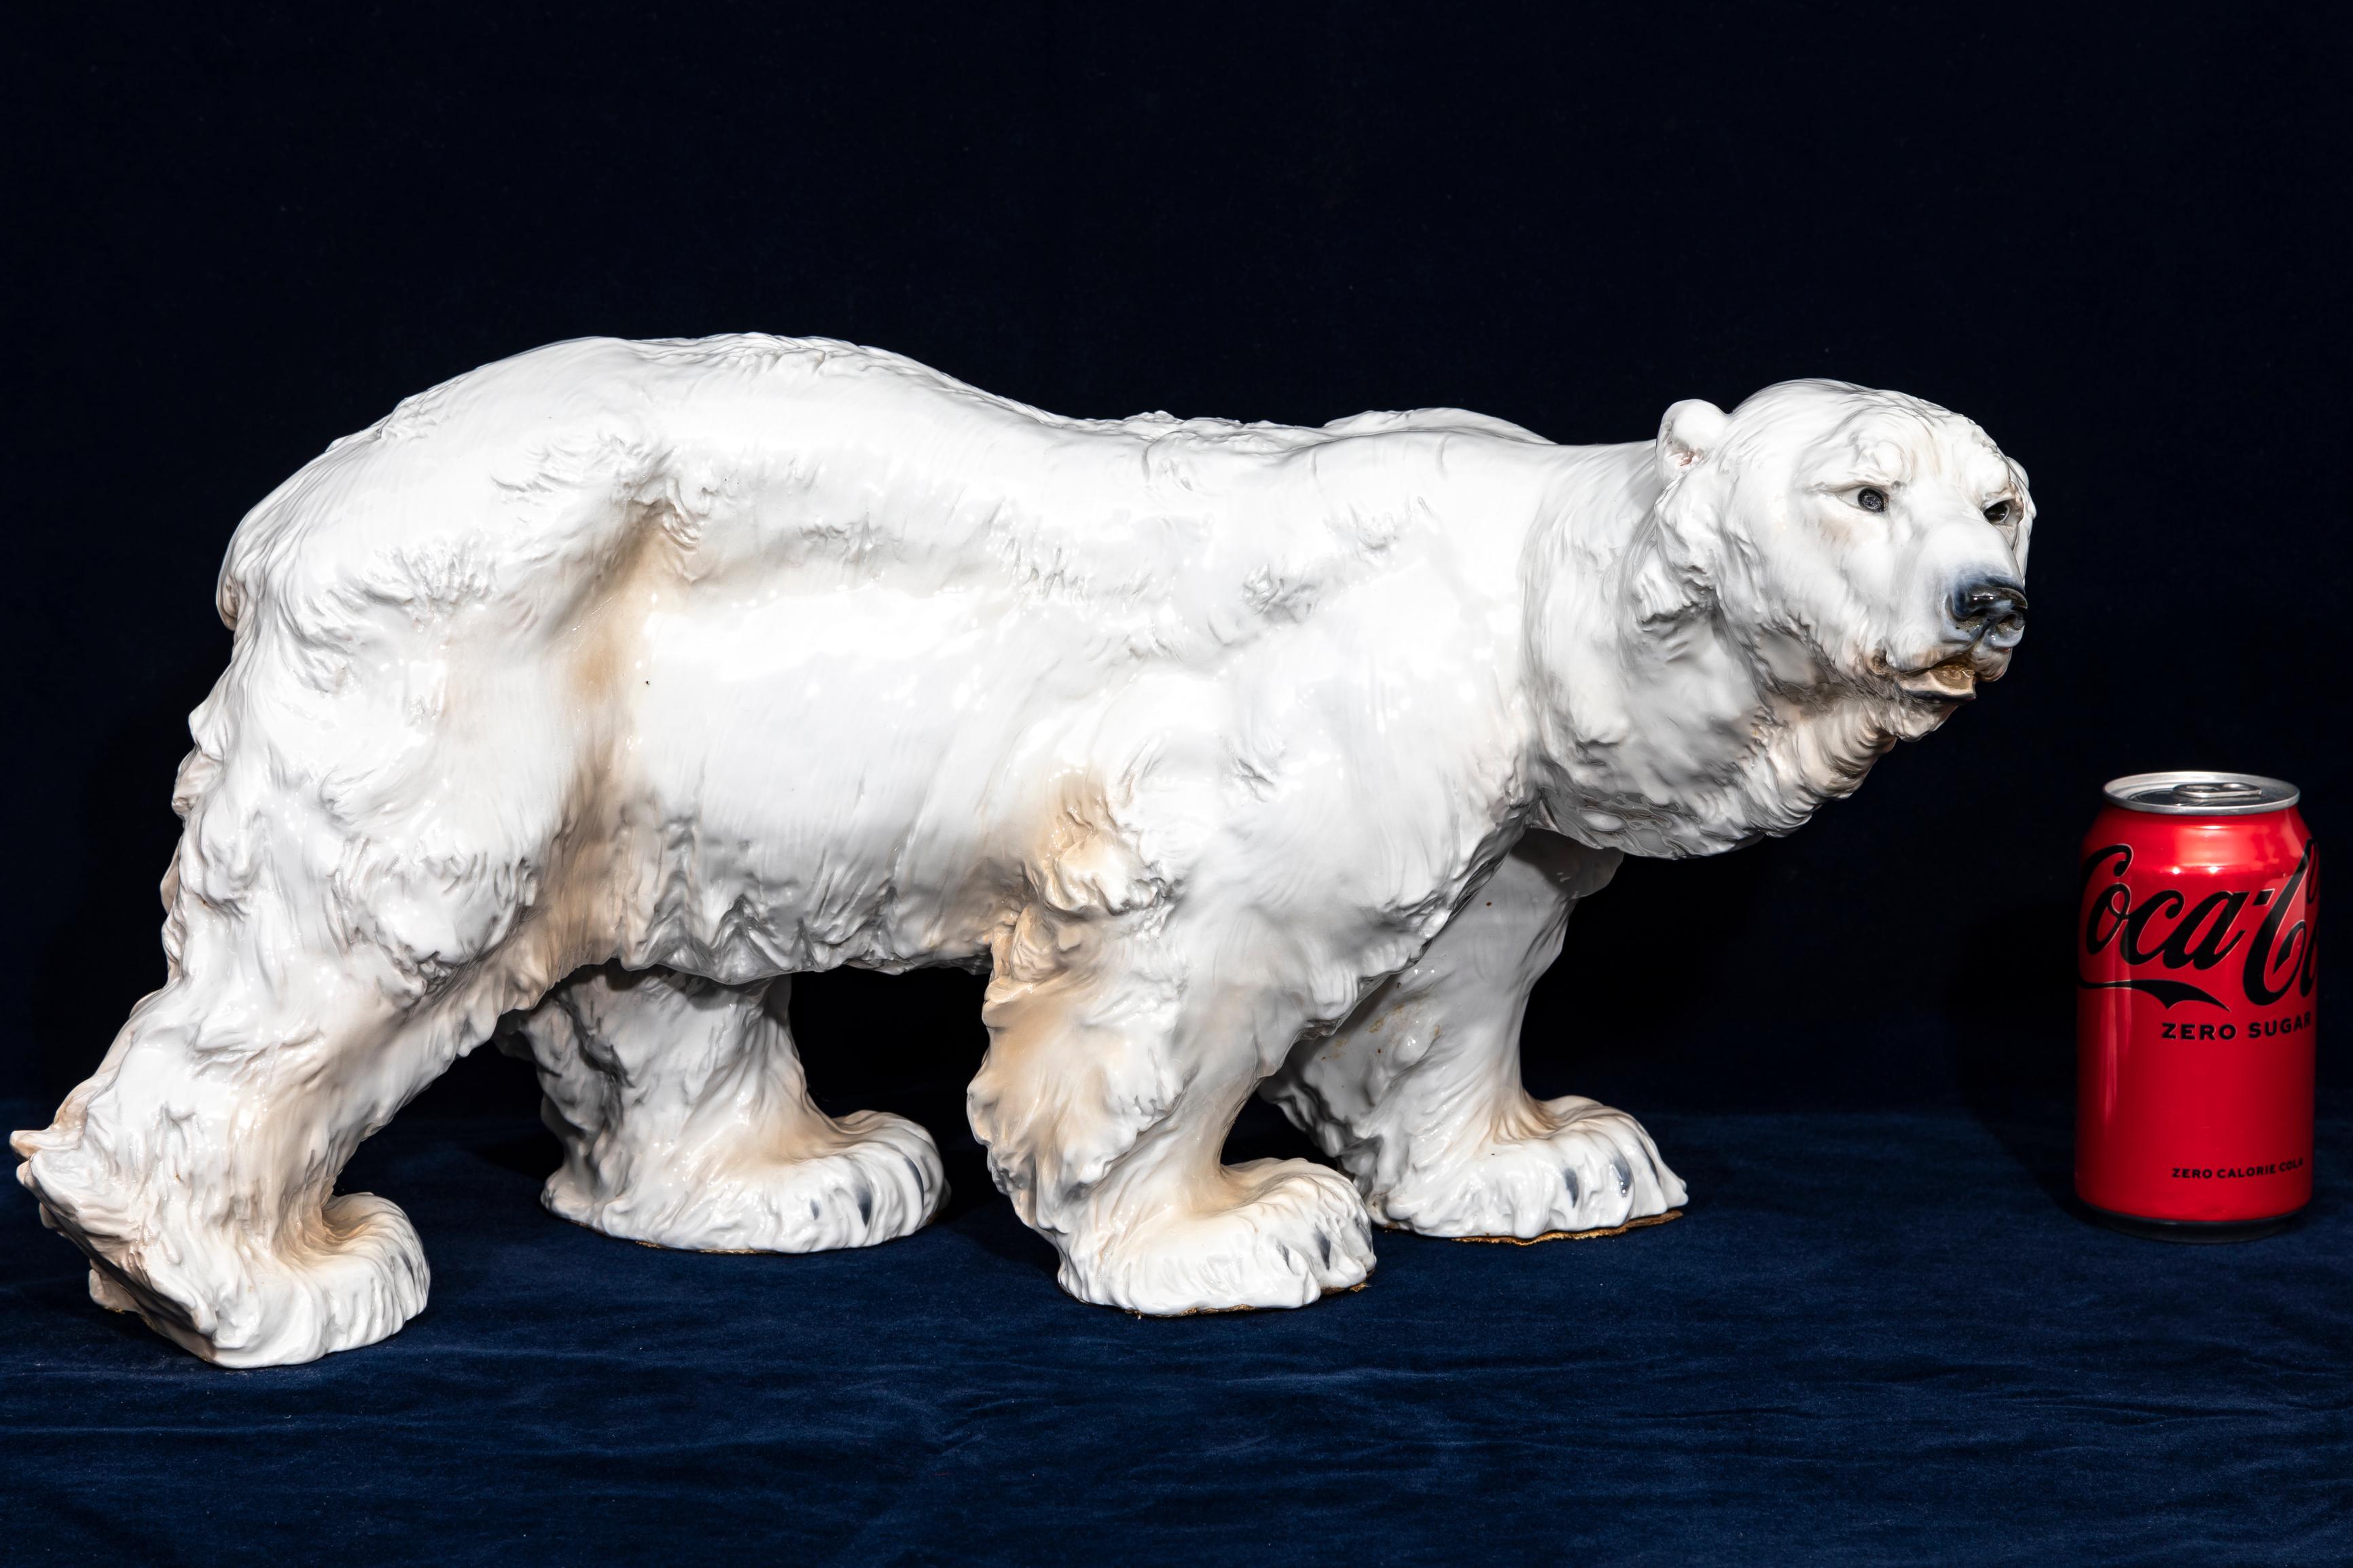 Magnifique et très grande sculpture en porcelaine de Meissen Art déco d'un ours polaire par Otto Jarl, magnifiquement sculptée, gravée et peinte à la main sous la glaçure. Jarl, Otto (1856-1915), sculpteur austro-suédois, étudie à Stockholm et à